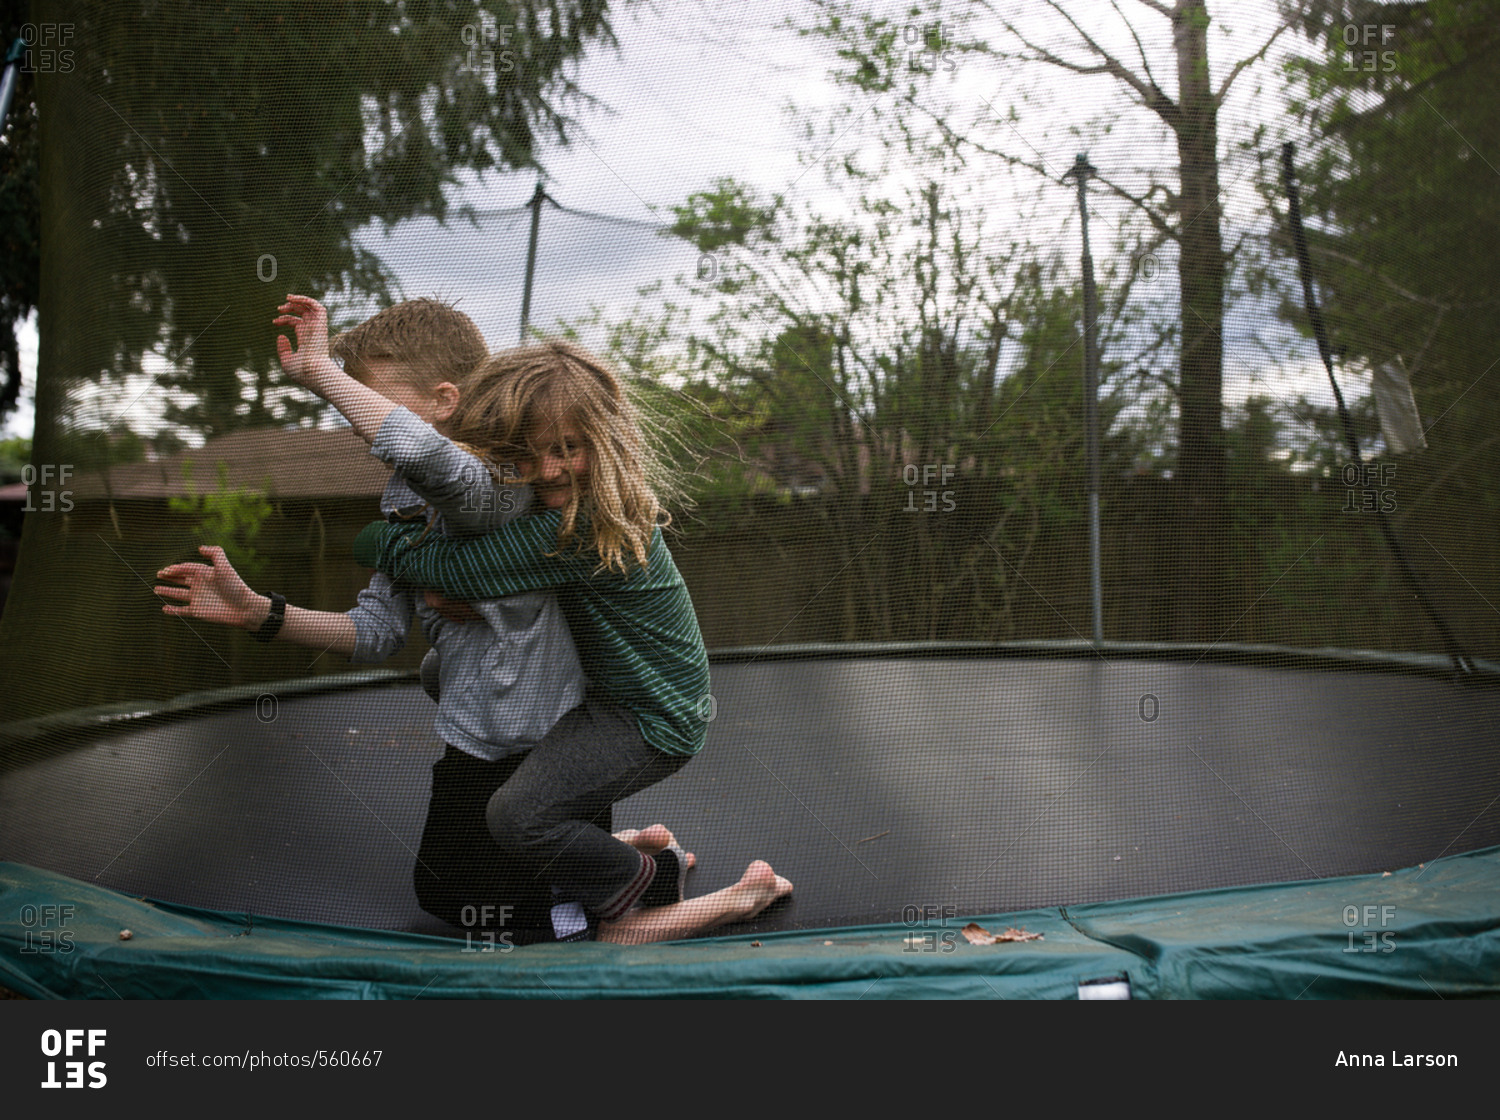 Overdreven anmodning ineffektiv Boys wrestling on a trampoline stock photo - OFFSET